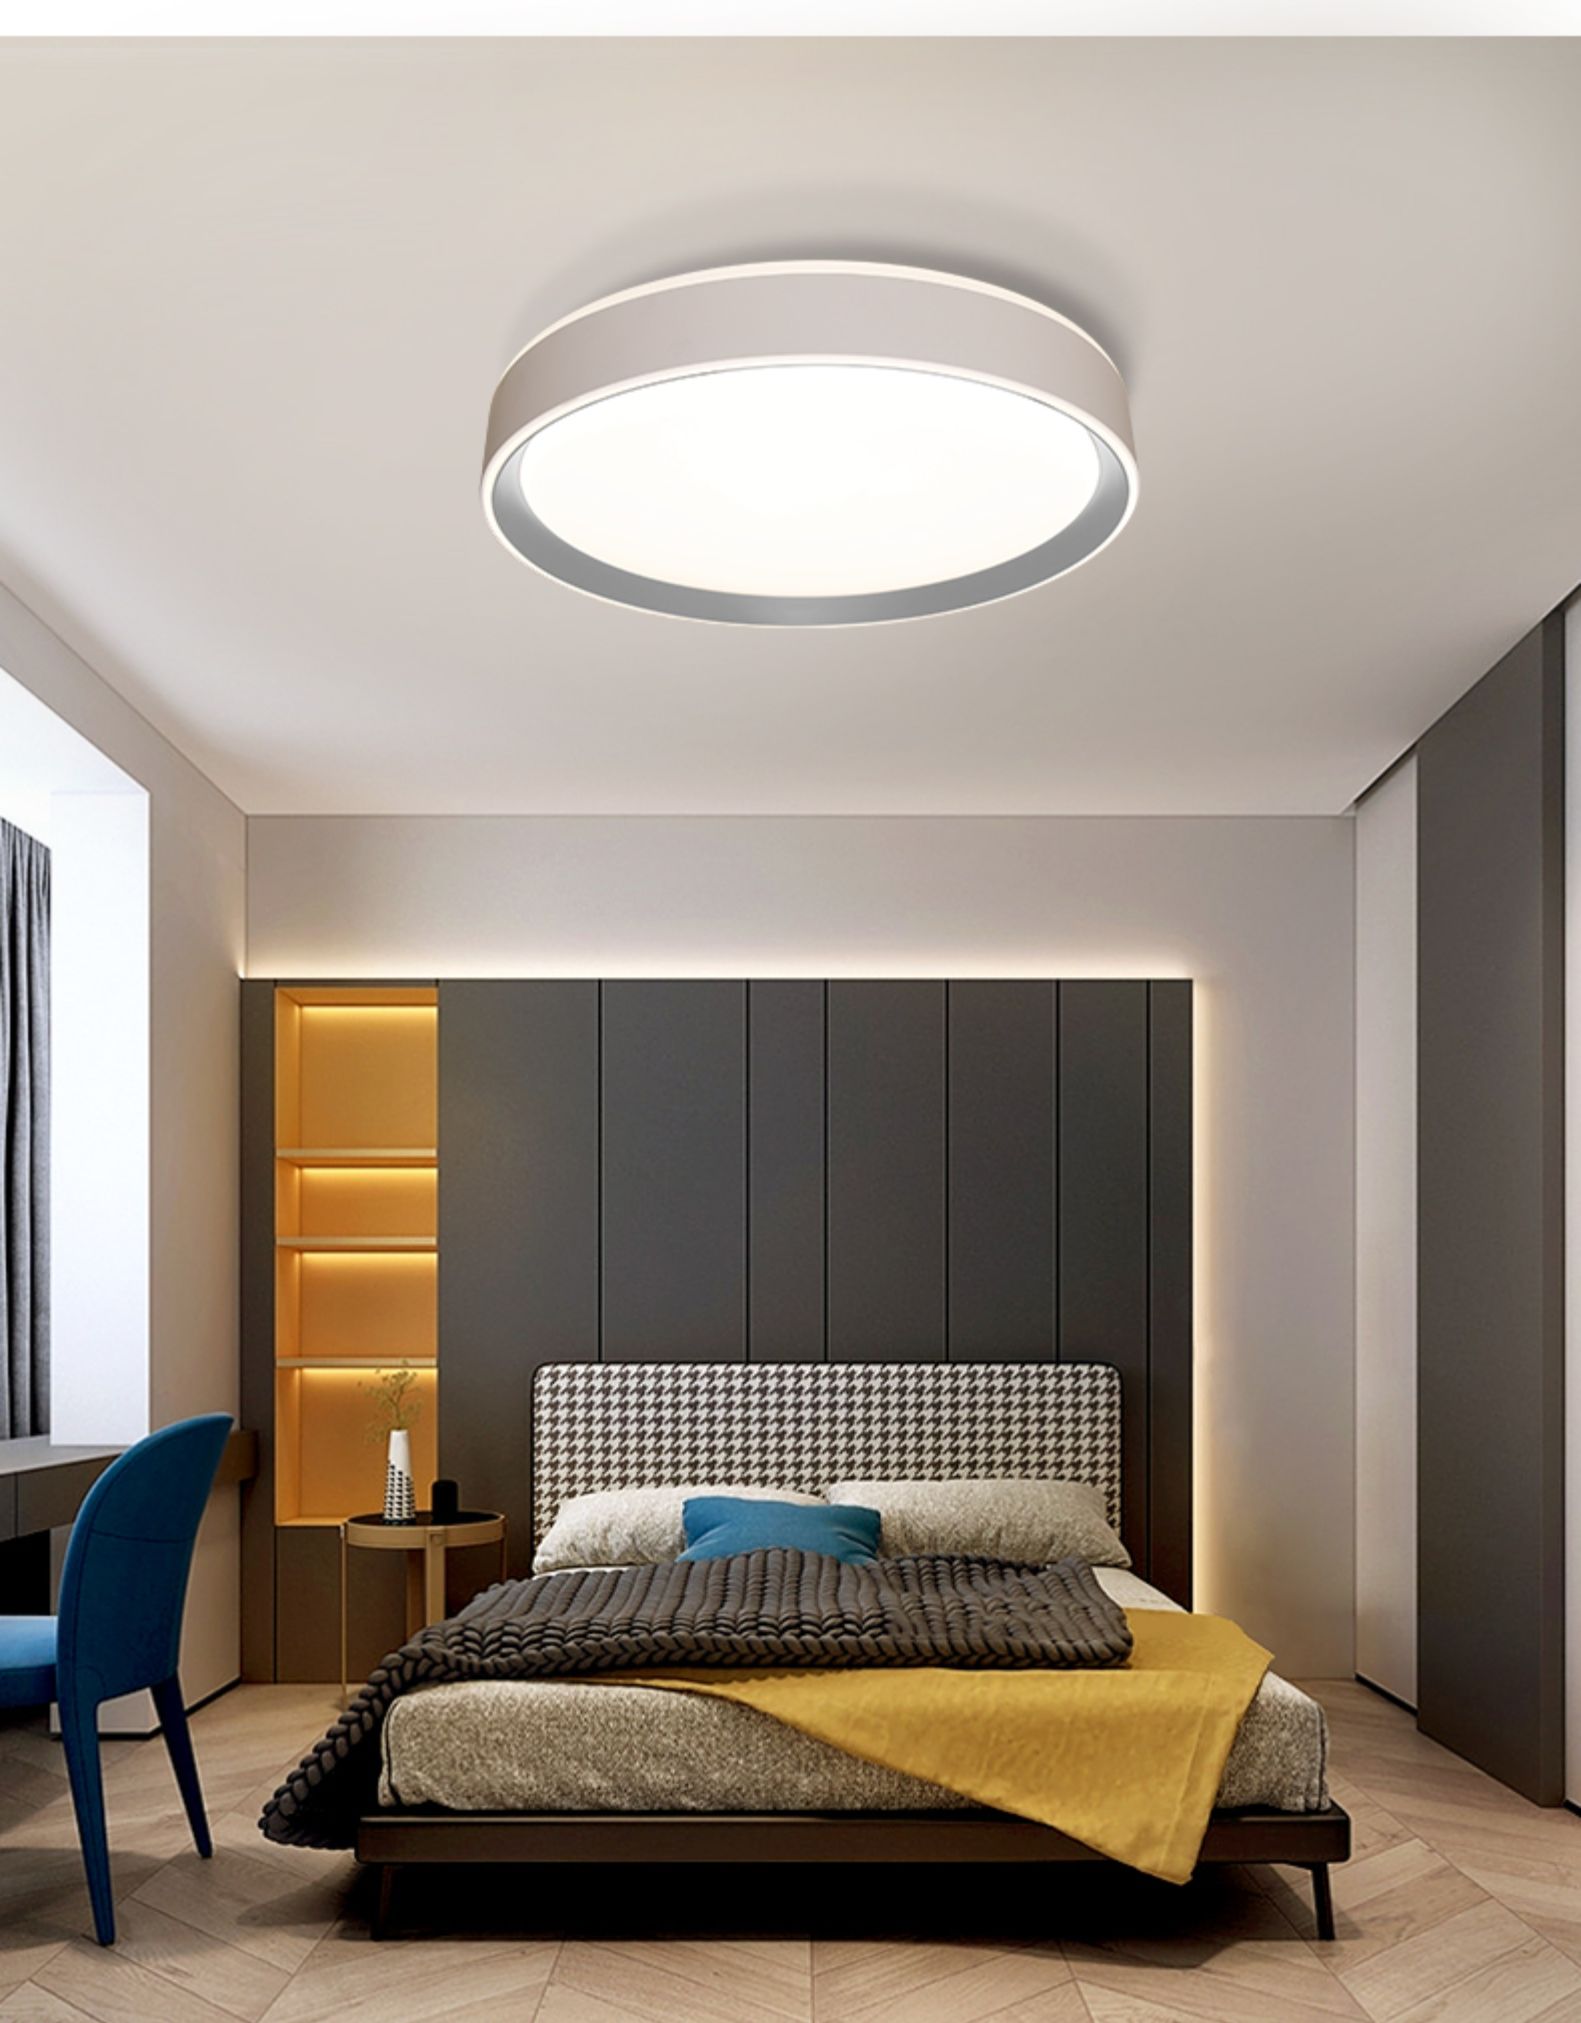 2021新款led吸顶灯三色北欧简约现代圆形大气家用房间书房卧室灯mx238